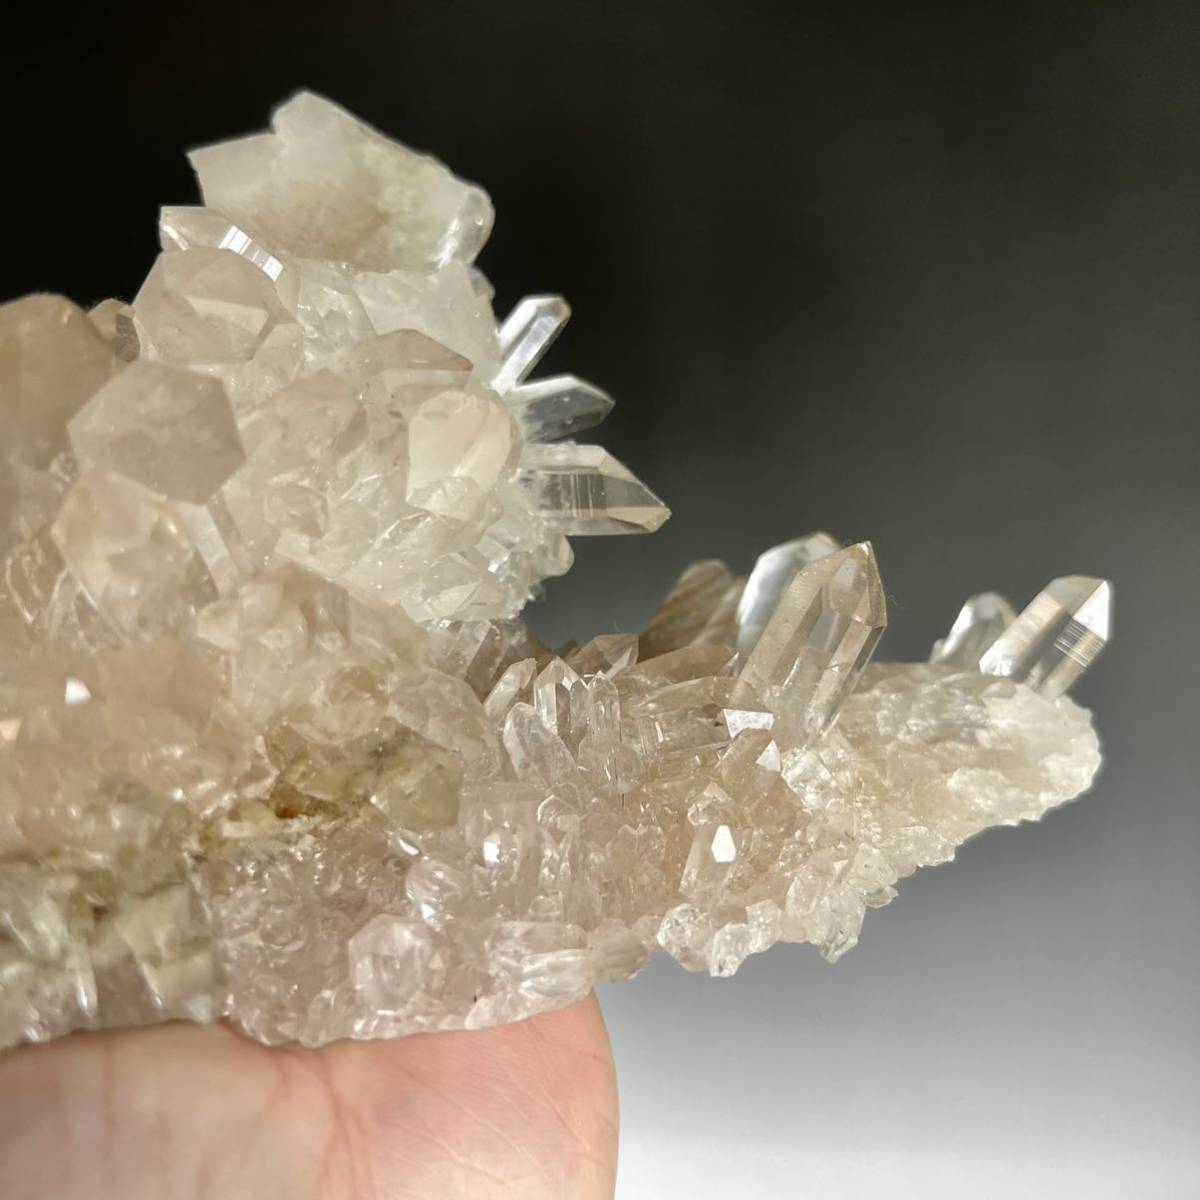  высокое качество himalaya кристалл manika Ran производство cluster кристалл cluster crystal 